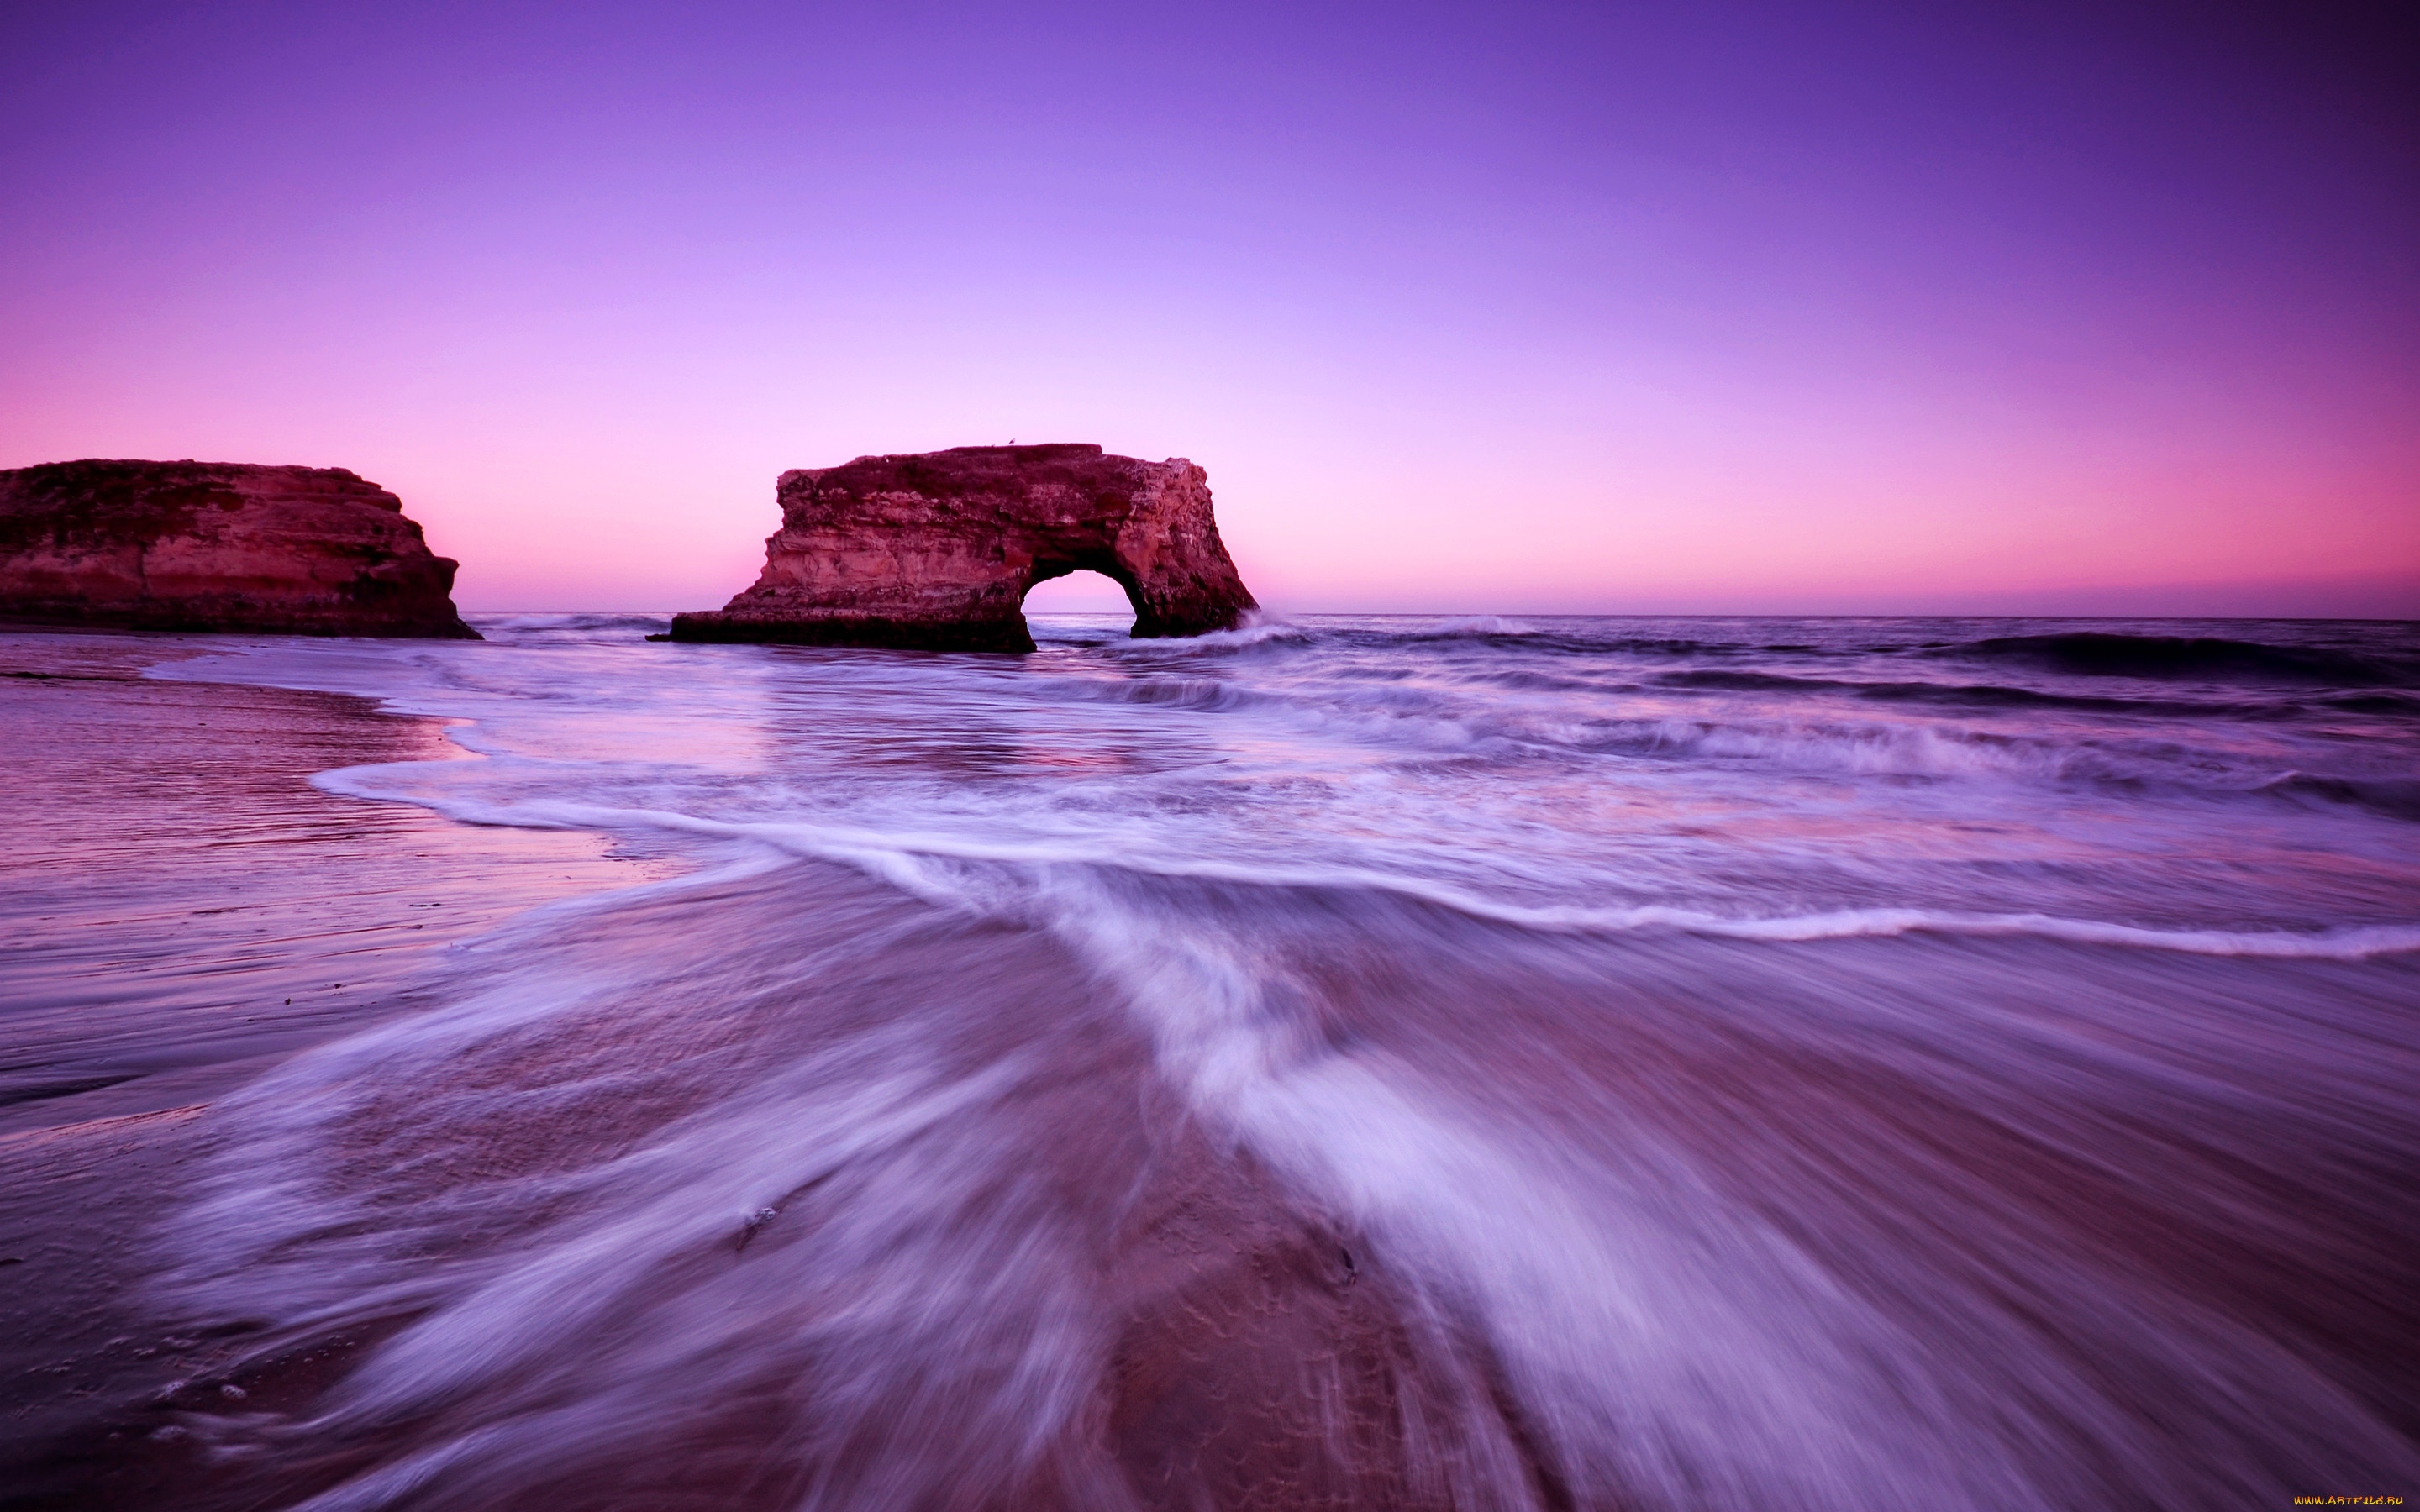 Картинки на заставку. Природа море. Пейзаж море. Фиолетовый пляж. Красивая природа.